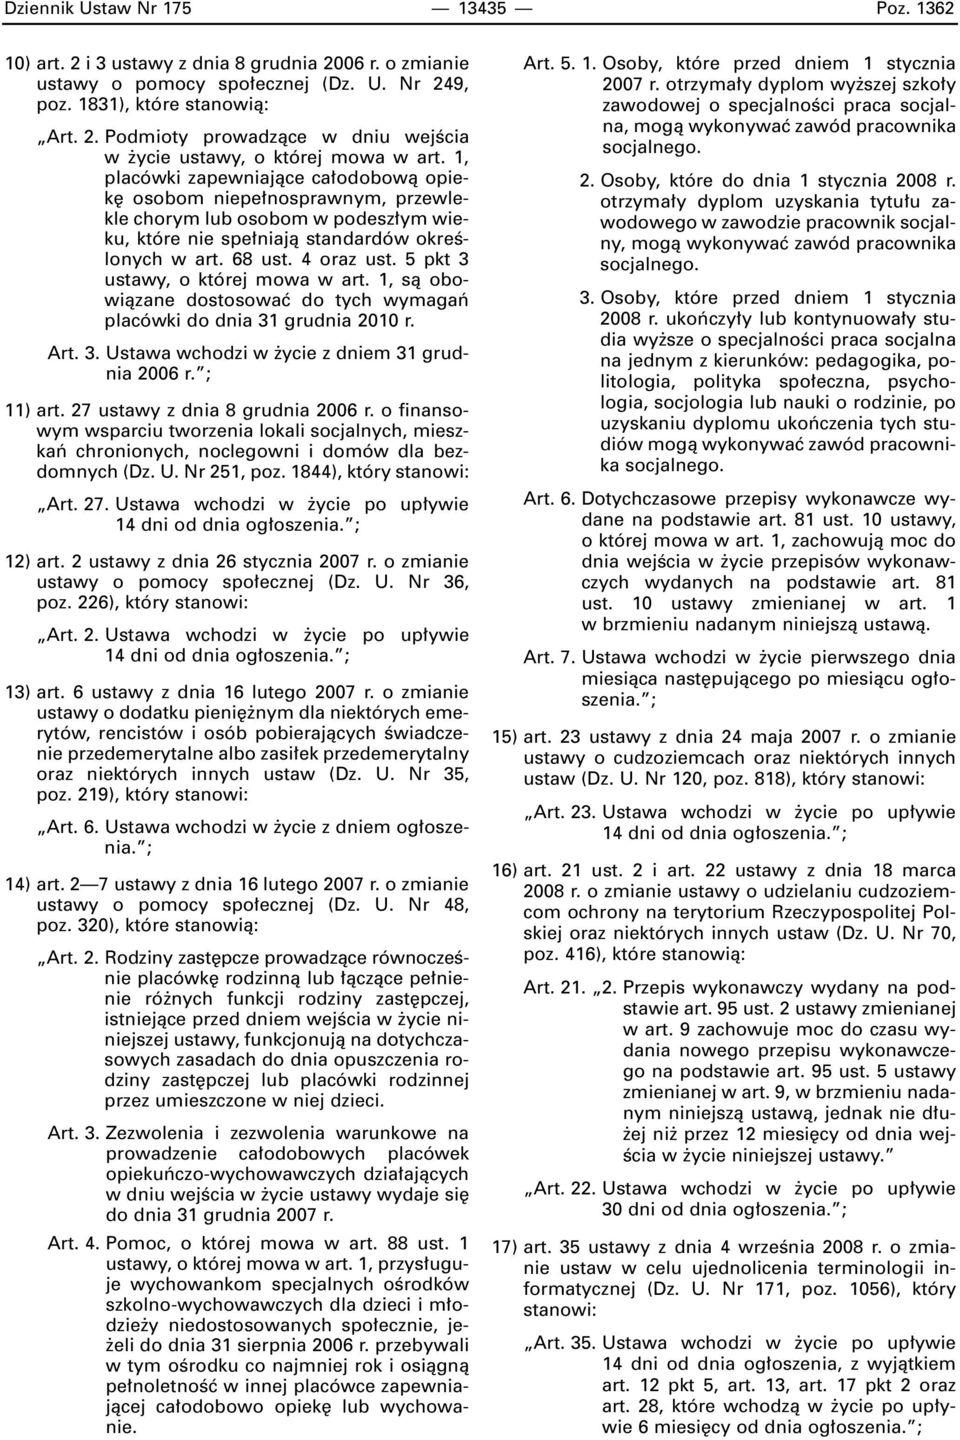 5 pkt 3 ustawy, o której mowa w art. 1, sà obowiàzane dostosowaç do tych wymagaƒ placówki do dnia 31 grudnia 2010 r. Art. 3. Ustawa wchodzi w ycie z dniem 31 grudnia 2006 r. ; 11) art.